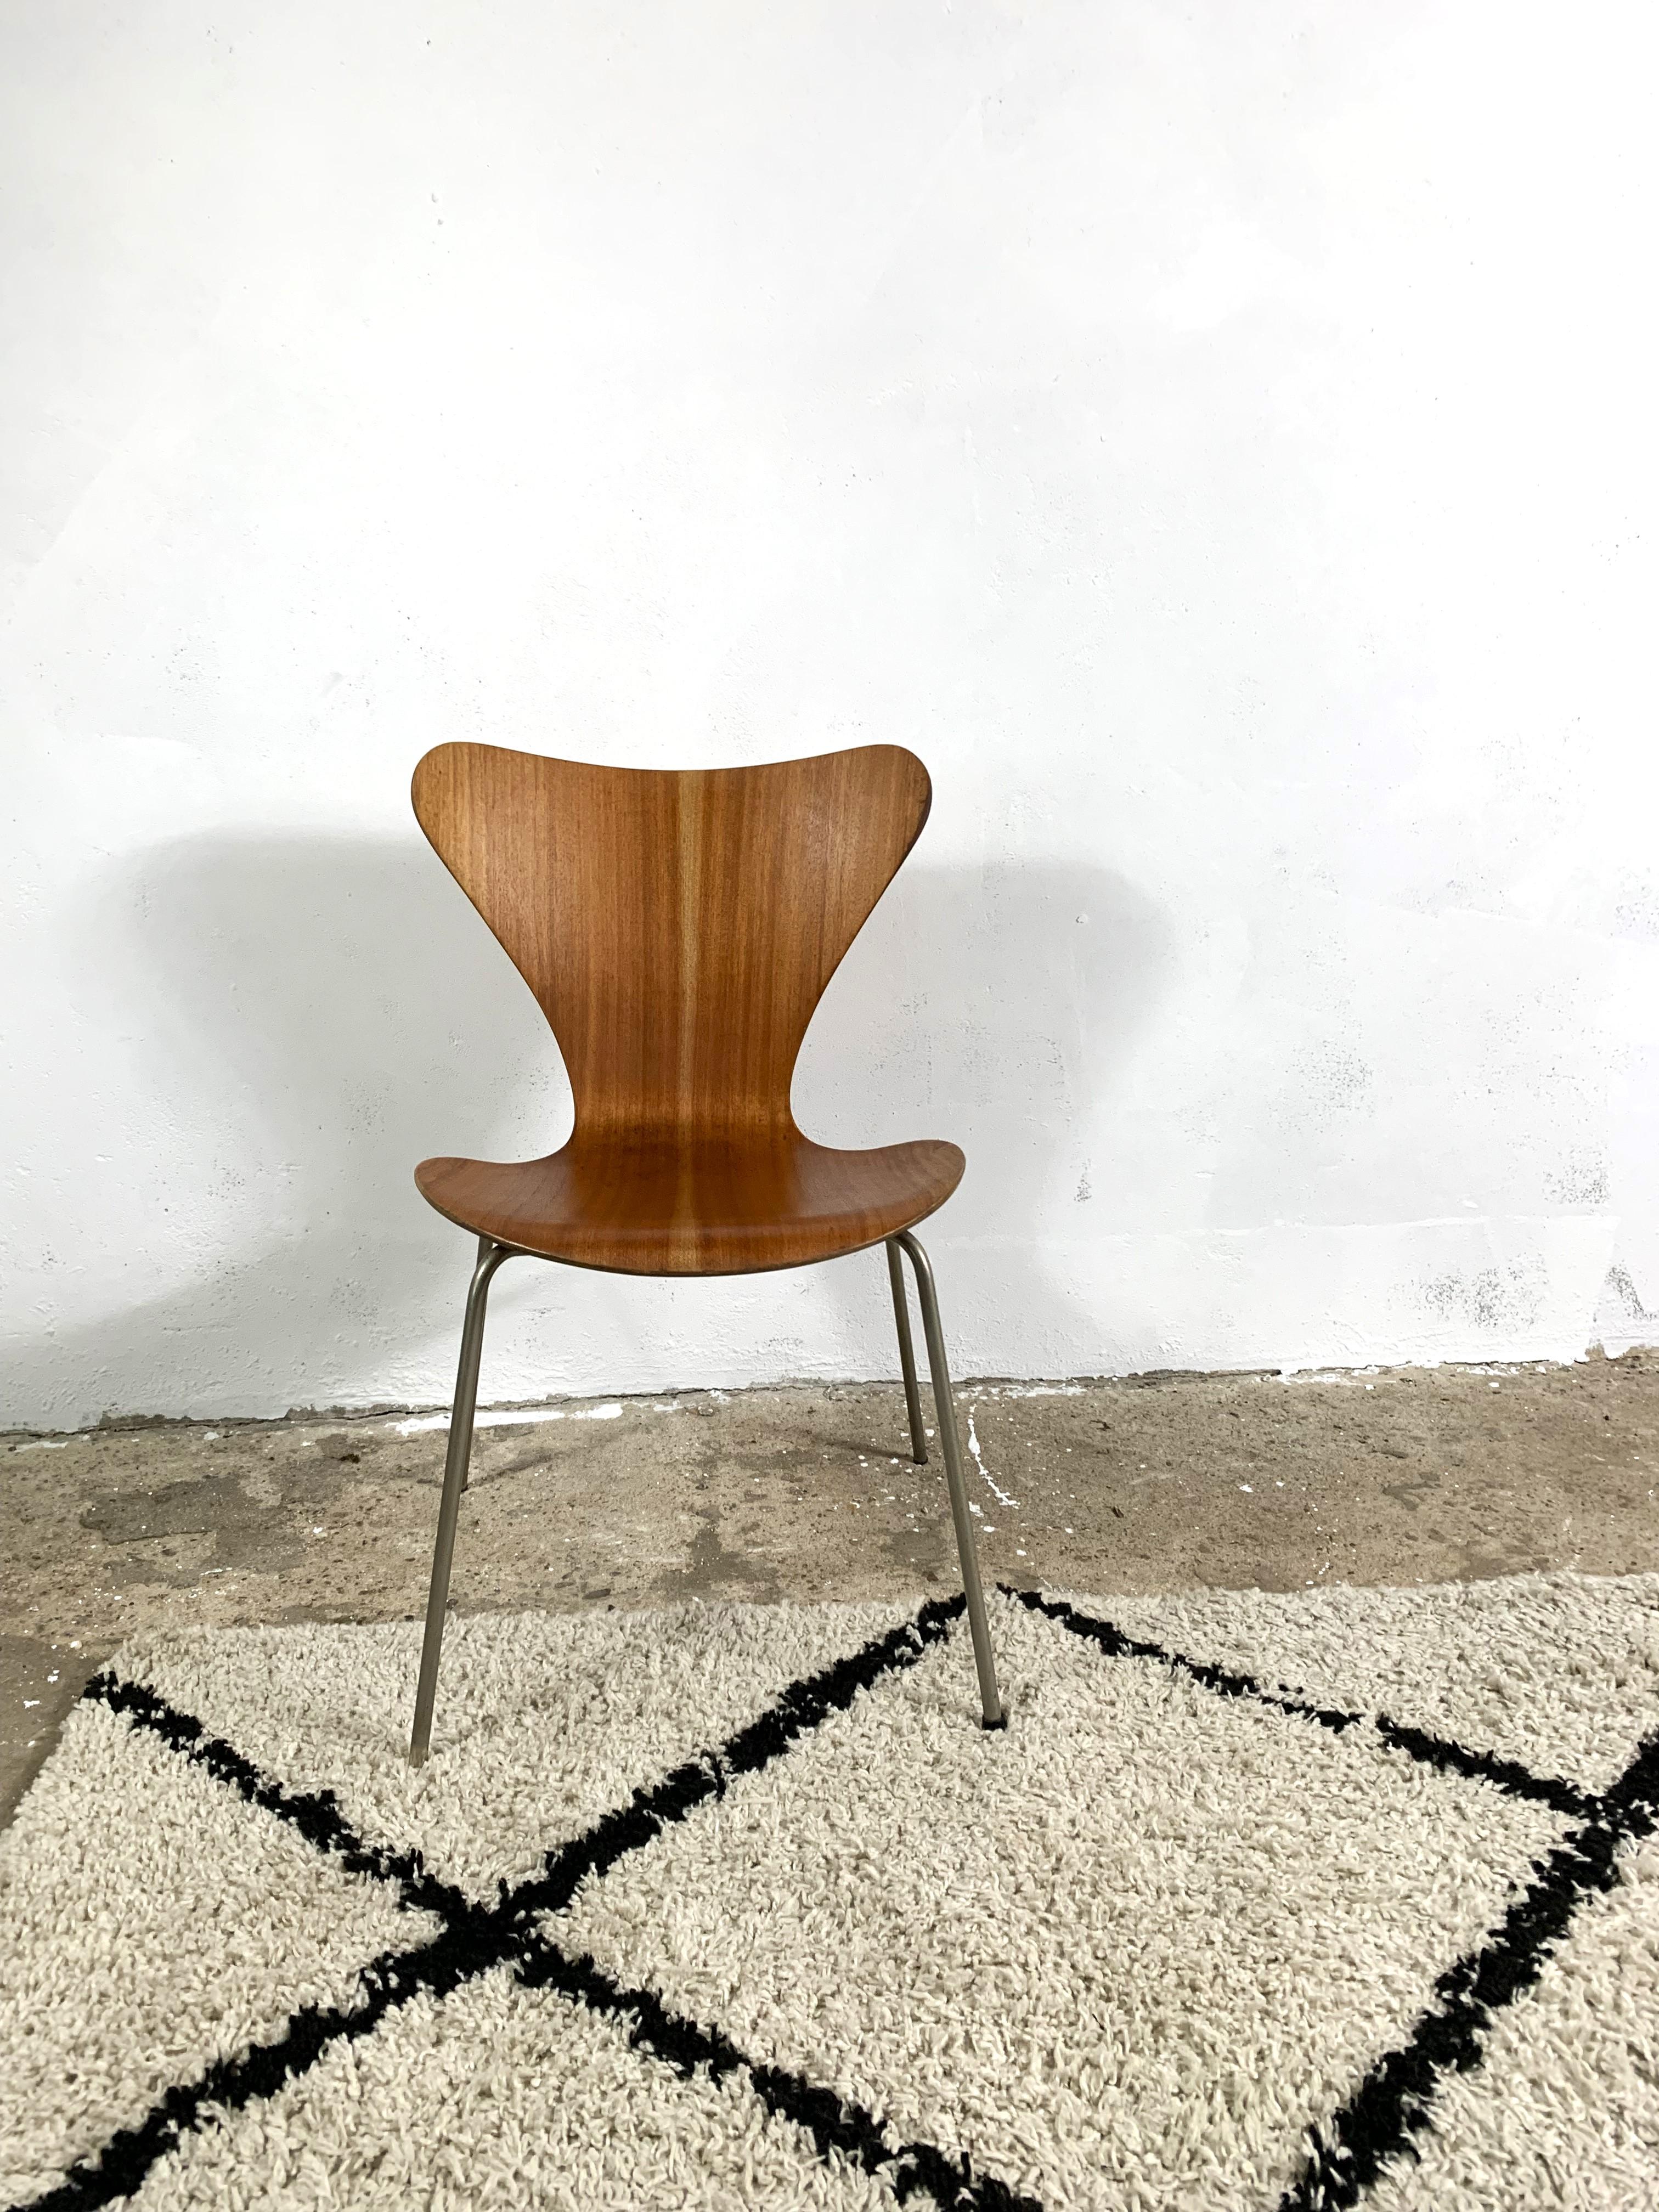 3107 Stuhl, entworfen von Arne Jacobsen für Fritz Hansen, Teakholzfurnier. Dieser Stuhl wird wegen seiner einzigartigen Form auch Schmetterlingsstuhl genannt. Der Stuhl wurde renoviert und geölt. Ikonisches Objekt!